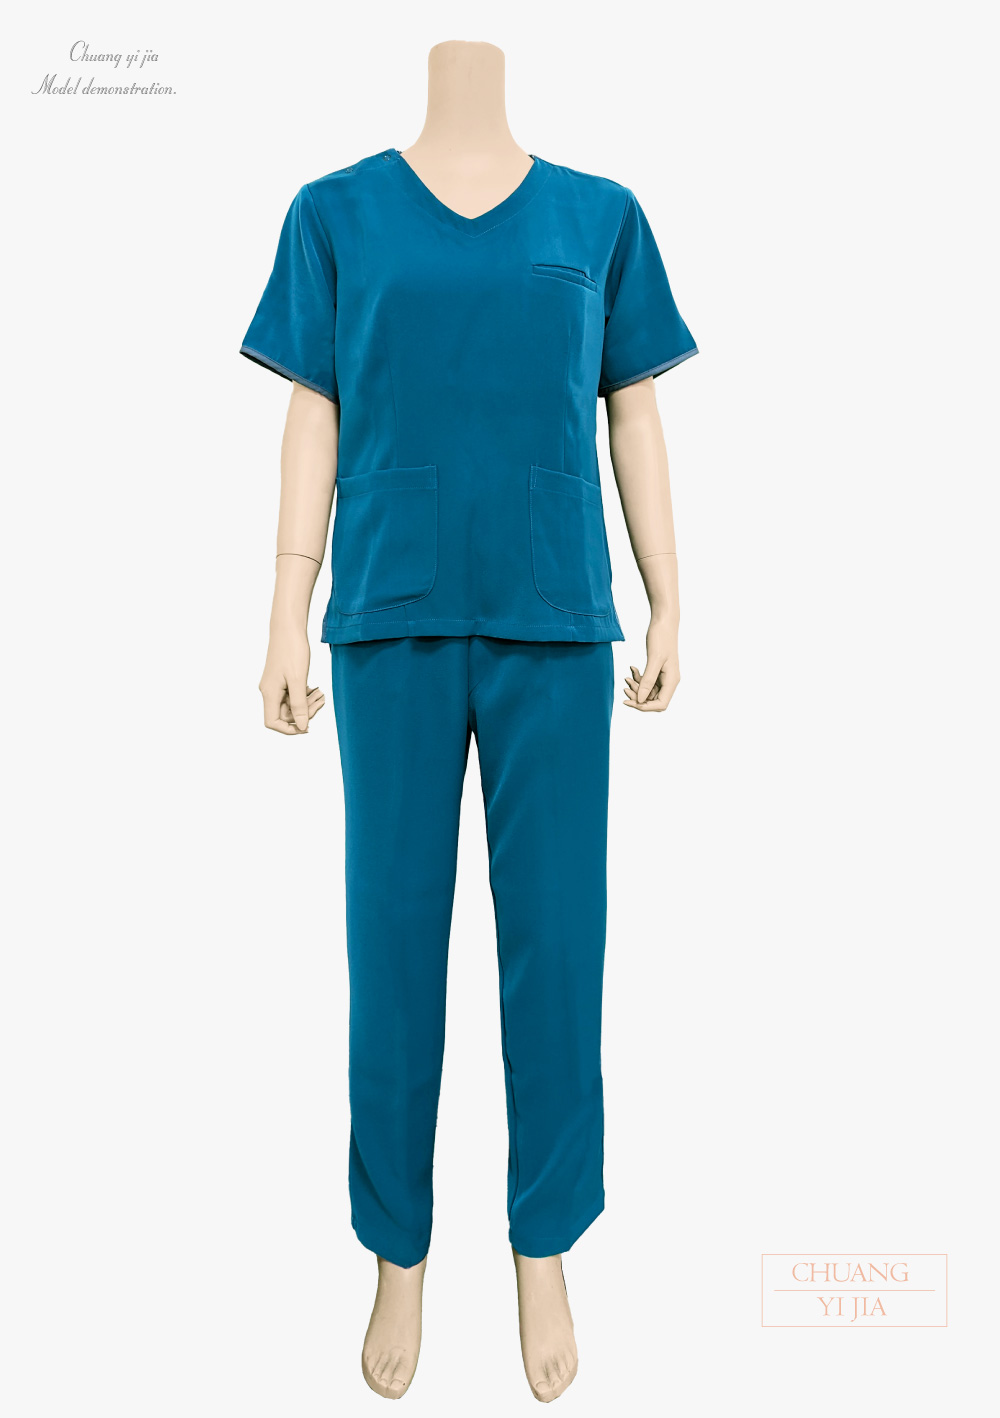 創e家團體服-V領手術服 肩開釦款-腰身版-湖水藍  全套正面